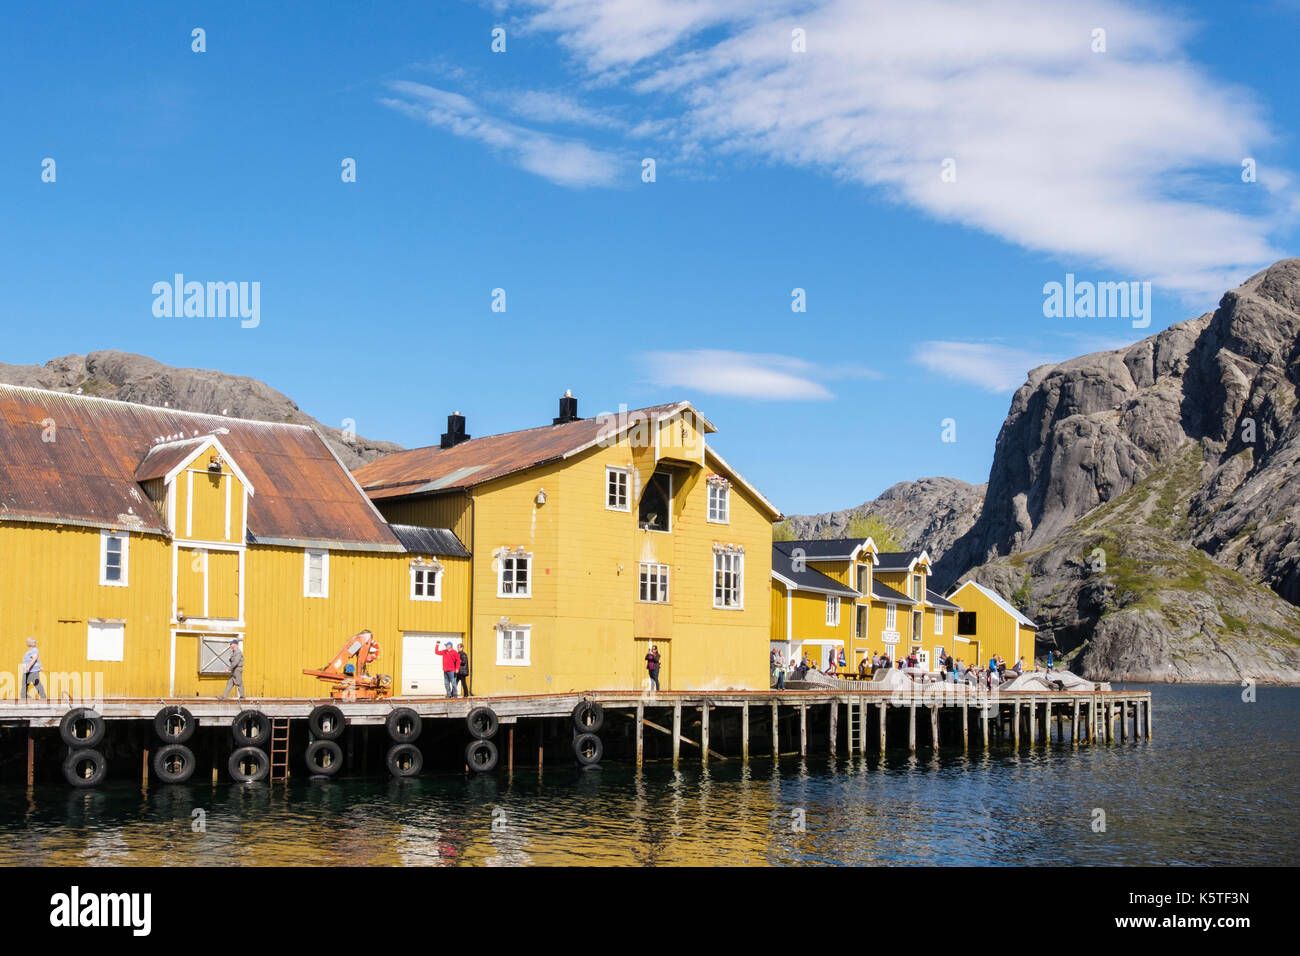 Vieux bâtiments en bois jaune sur pilotis au village de pêche historique de port. Nusfjord, Flakstadøya Island, îles Lofoten, Nordland, Norvège Banque D'Images